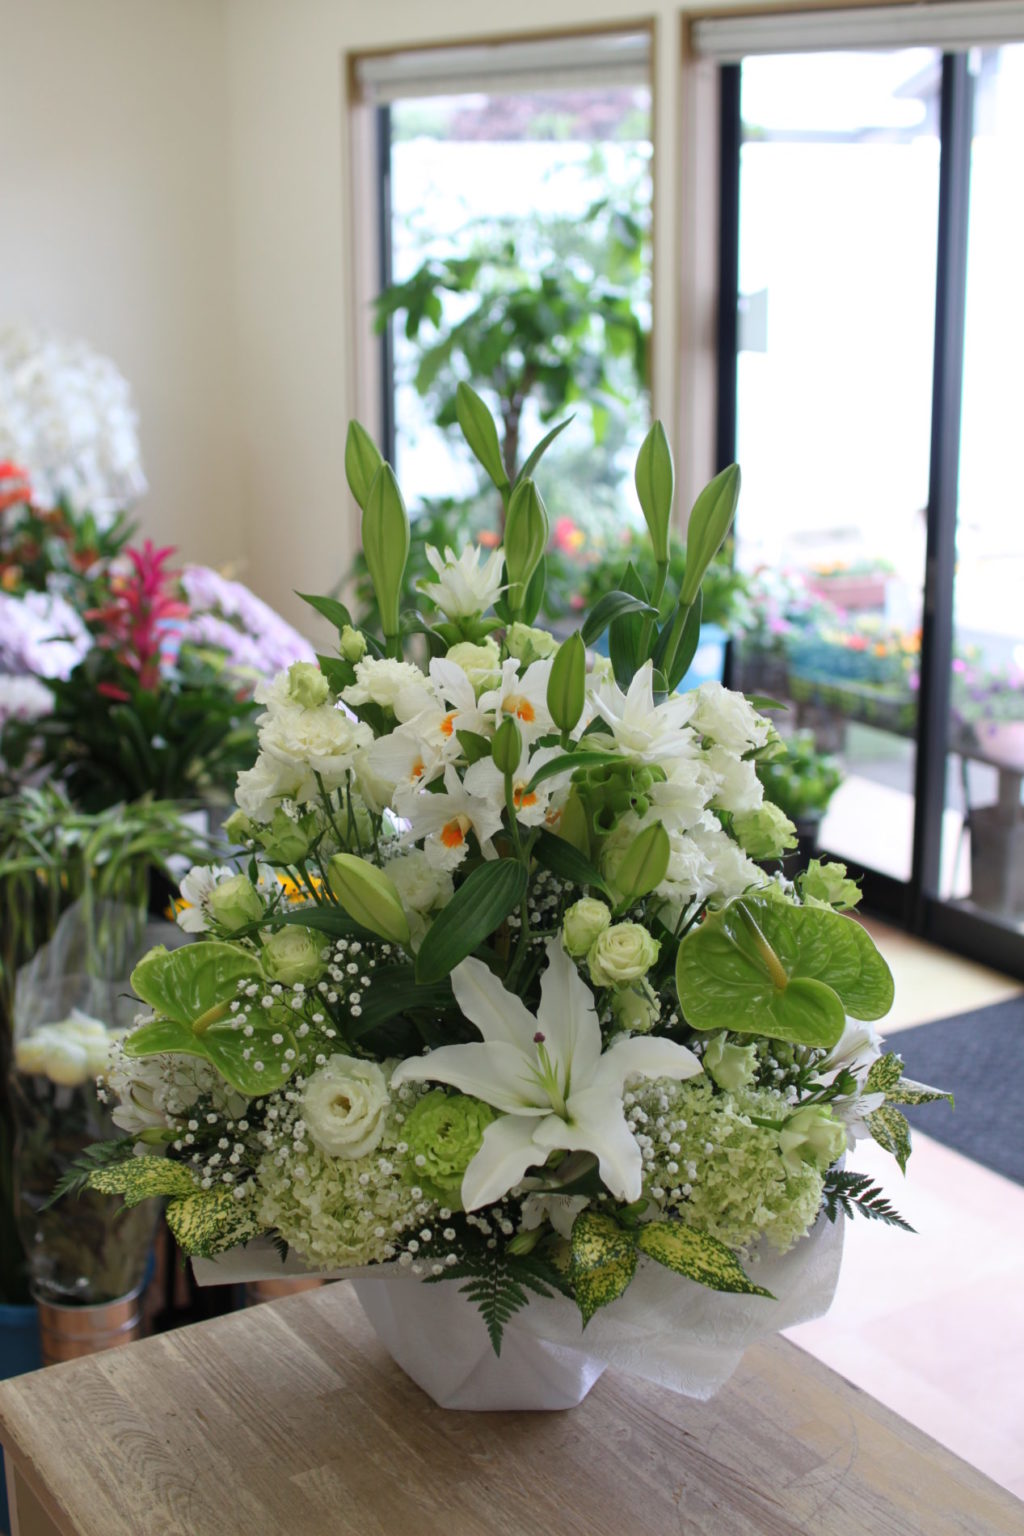 Western flower offering arrangement: 7,700 yen tax included